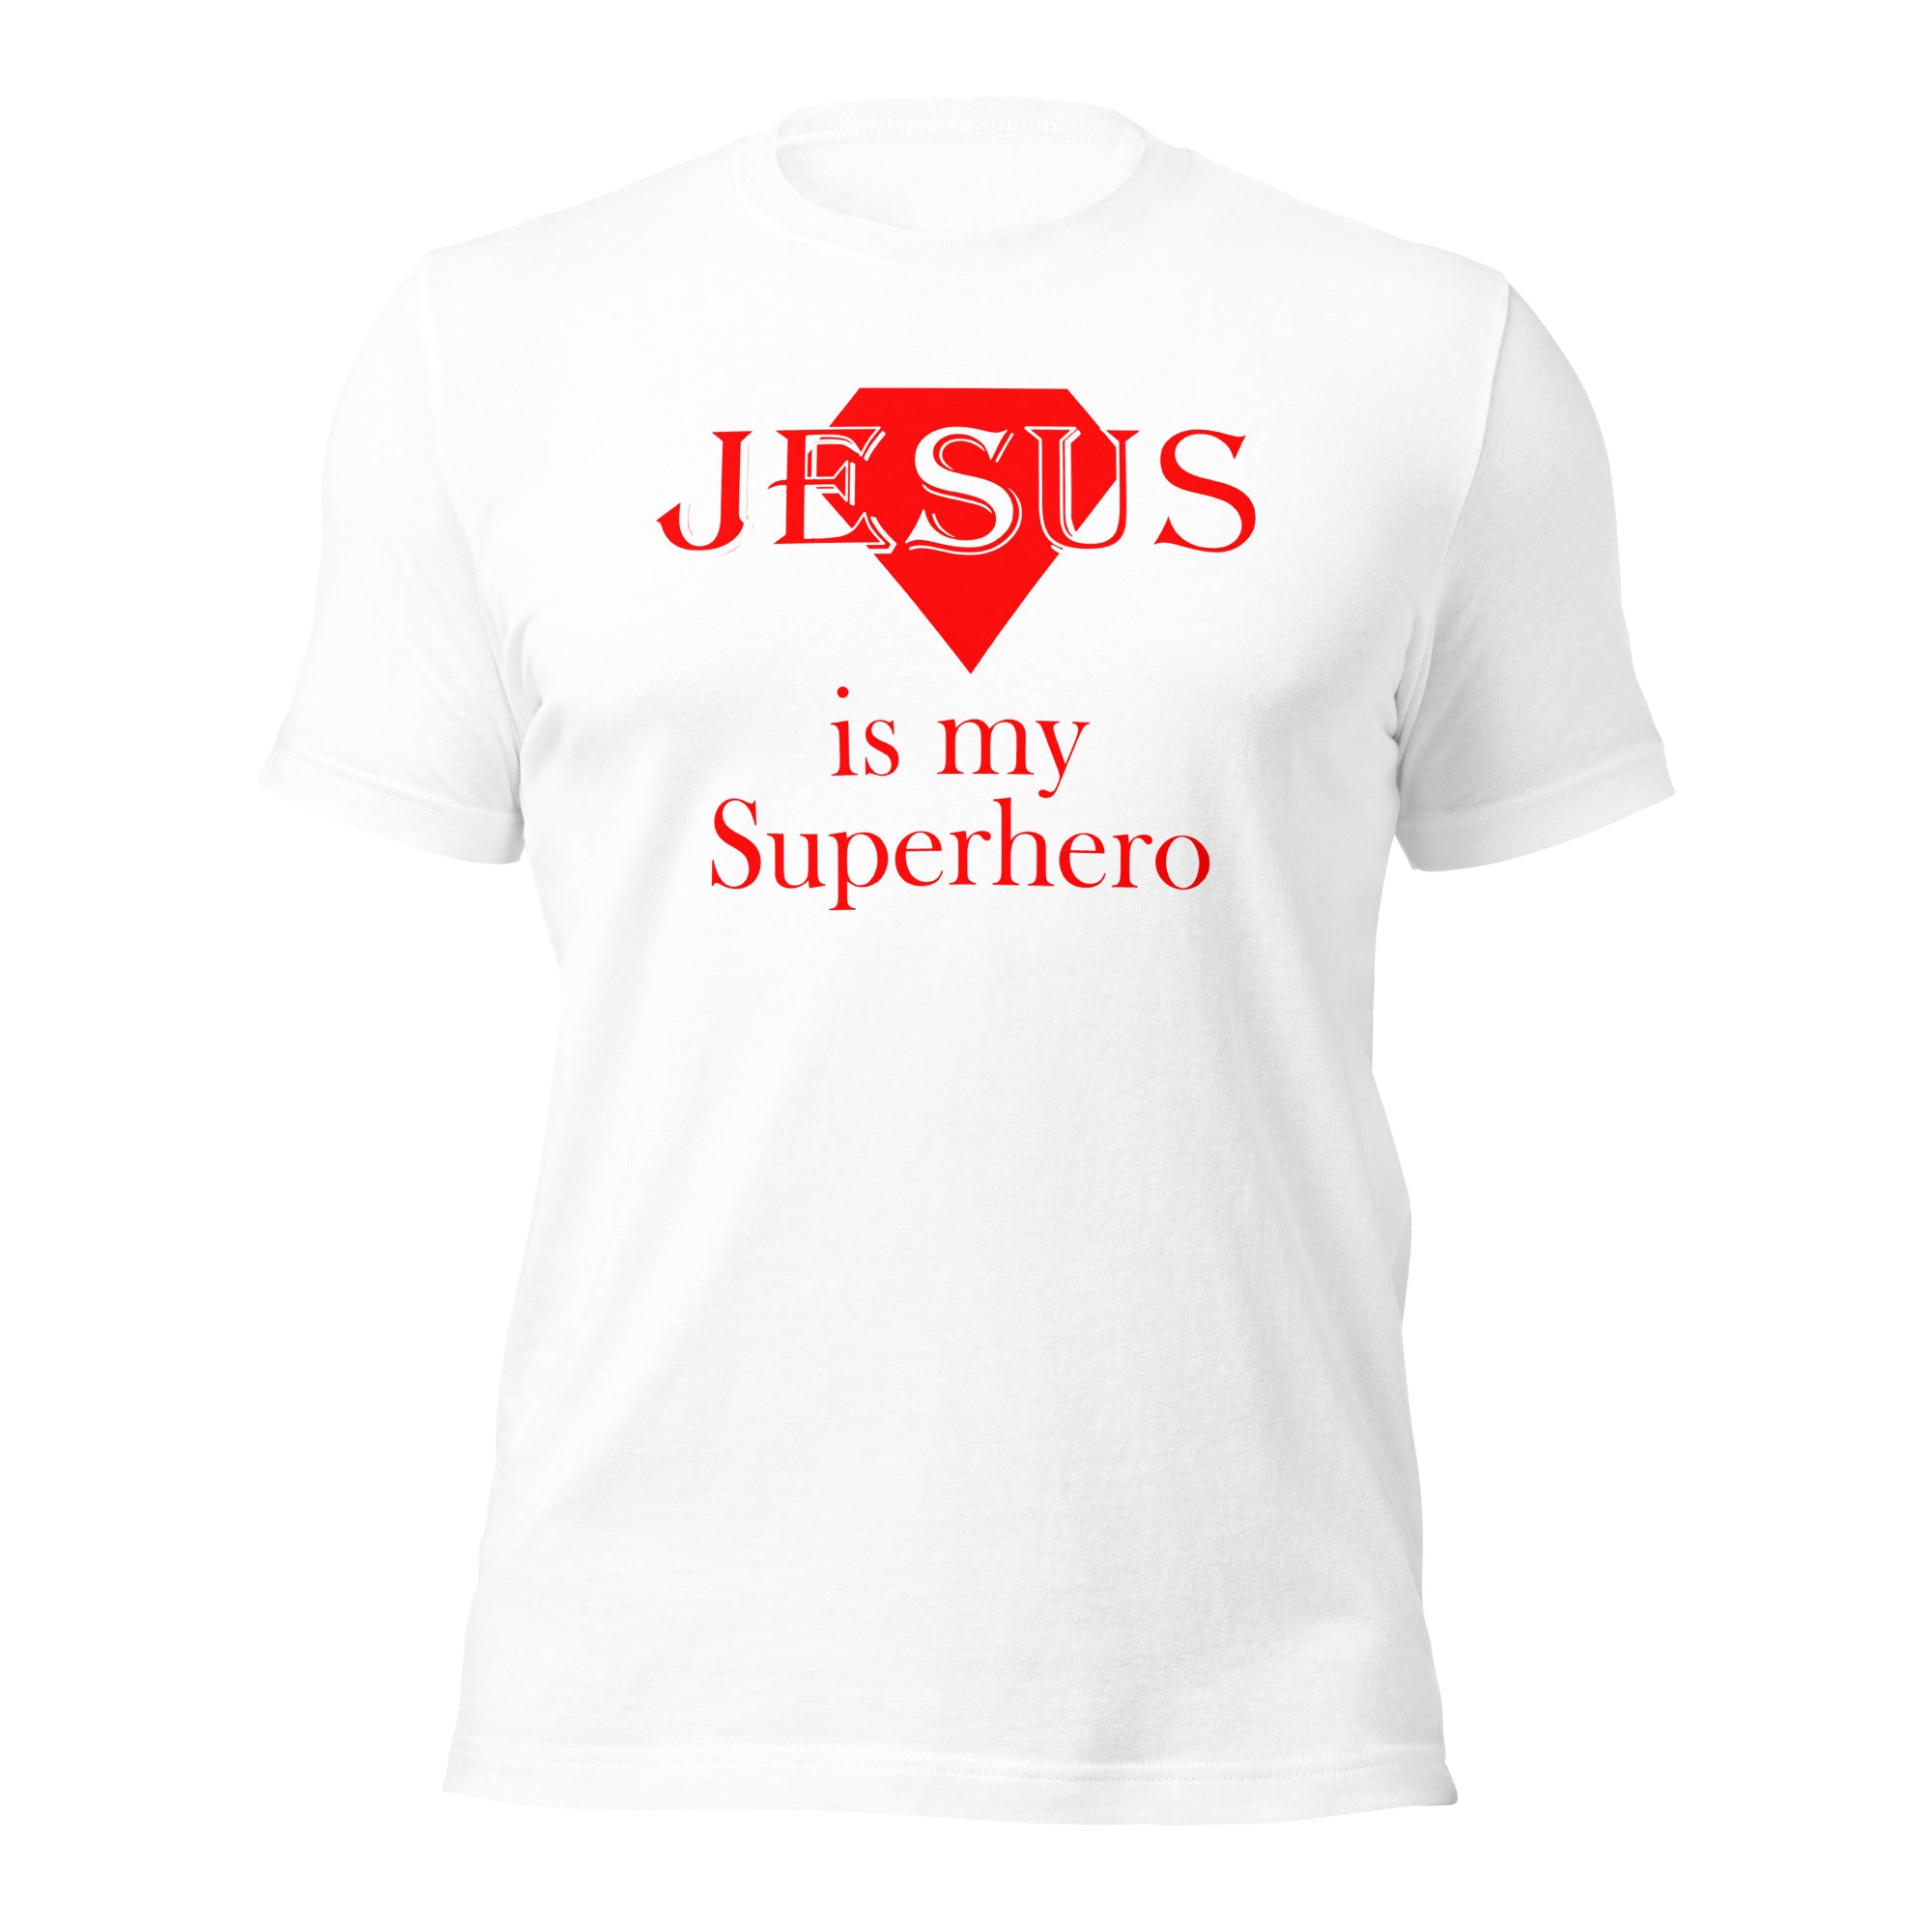 Jesus is my superhero Tee